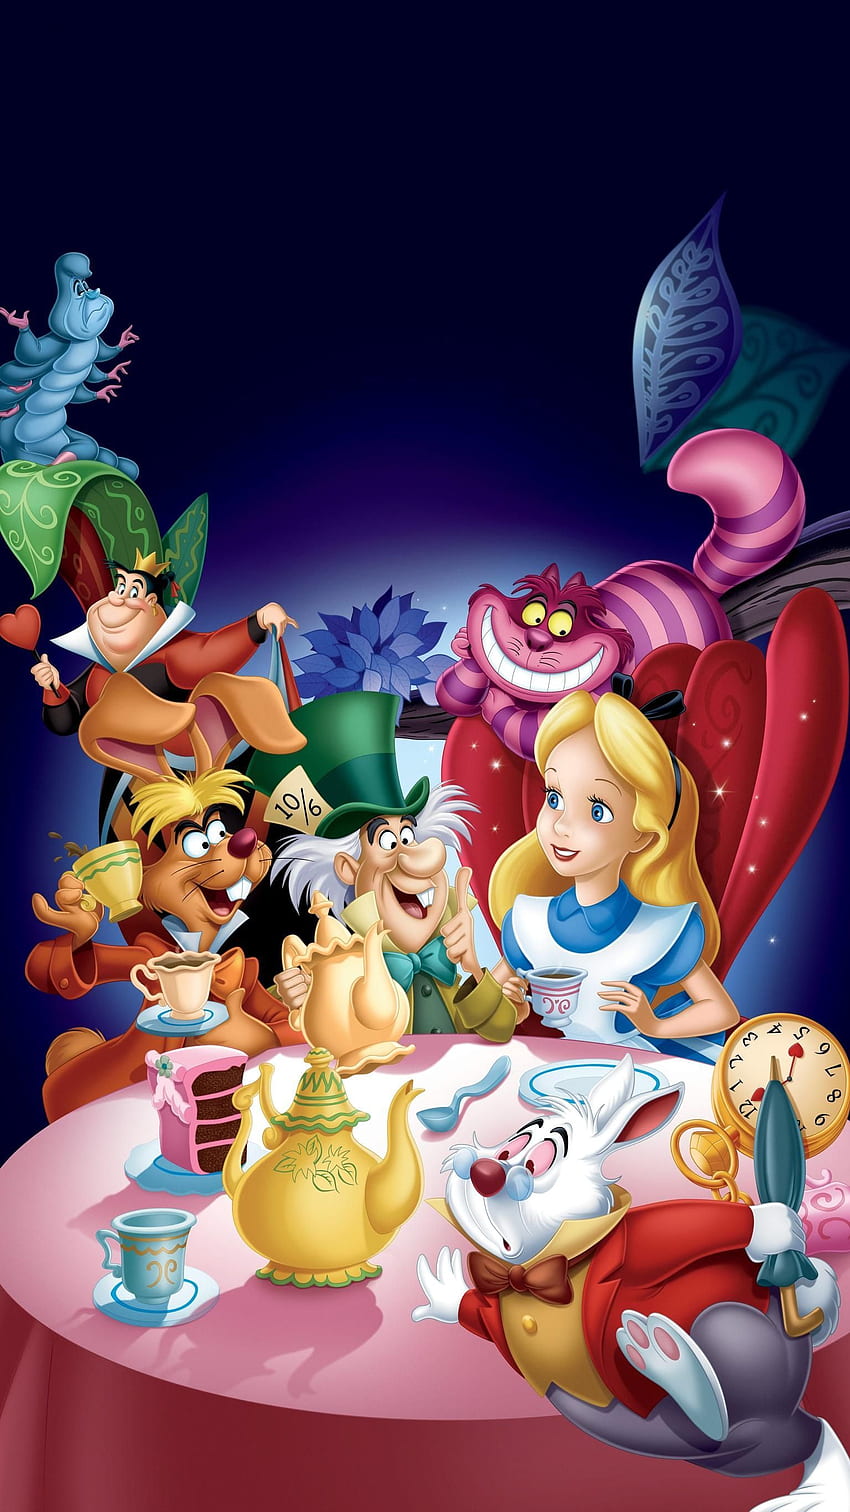 不思議の国のアリス (1951) 電話。 映画マニア。 Alice in wonderland ディズニー, Alice in wonderland cartoon, Alice in wonderland 1951 HD電話の壁紙